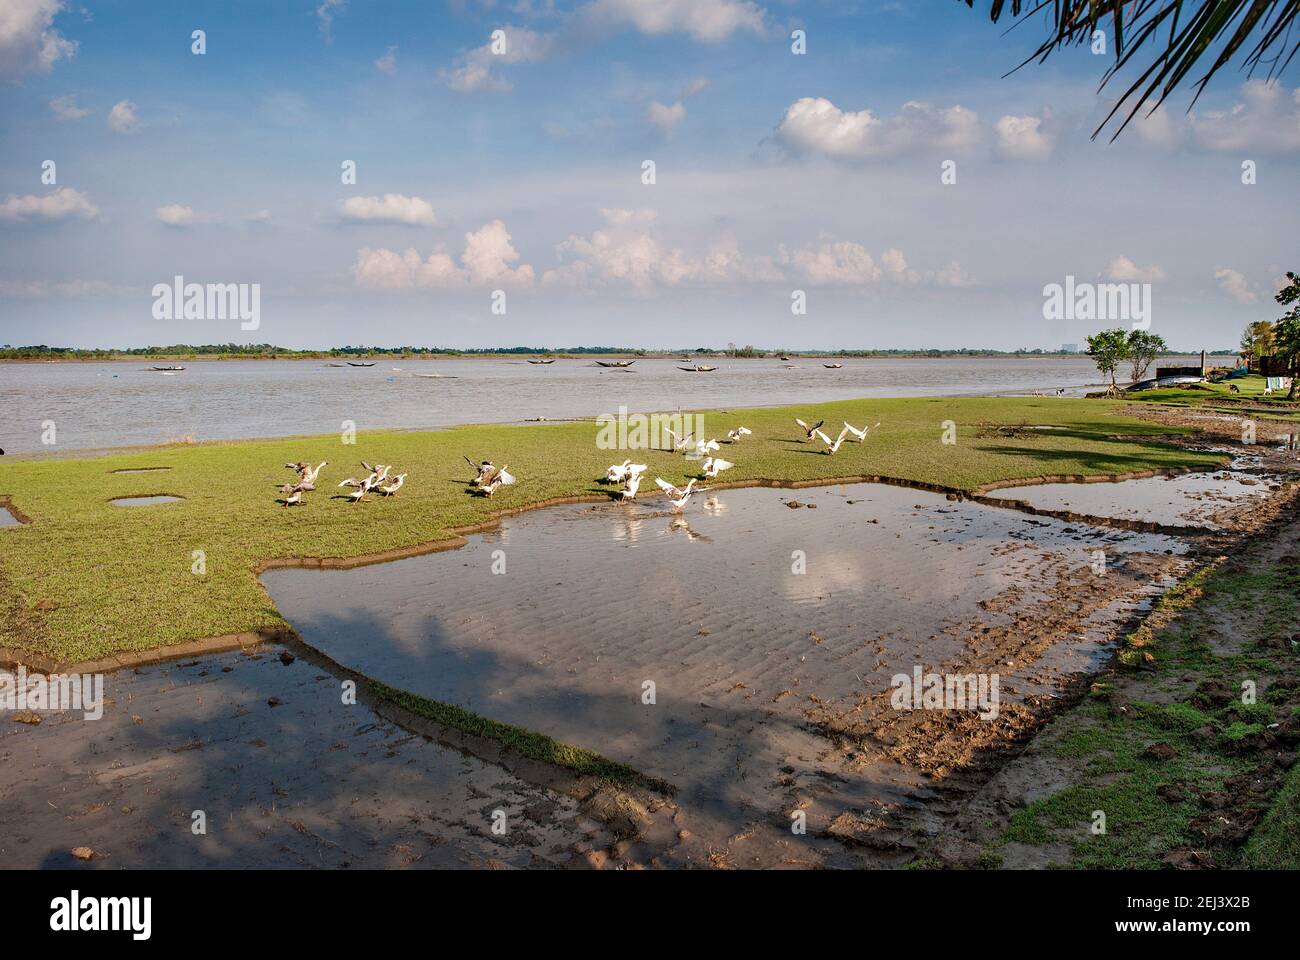 Swans on the bank of Rupsha River at Khulna, Bangladesh Stock Photo